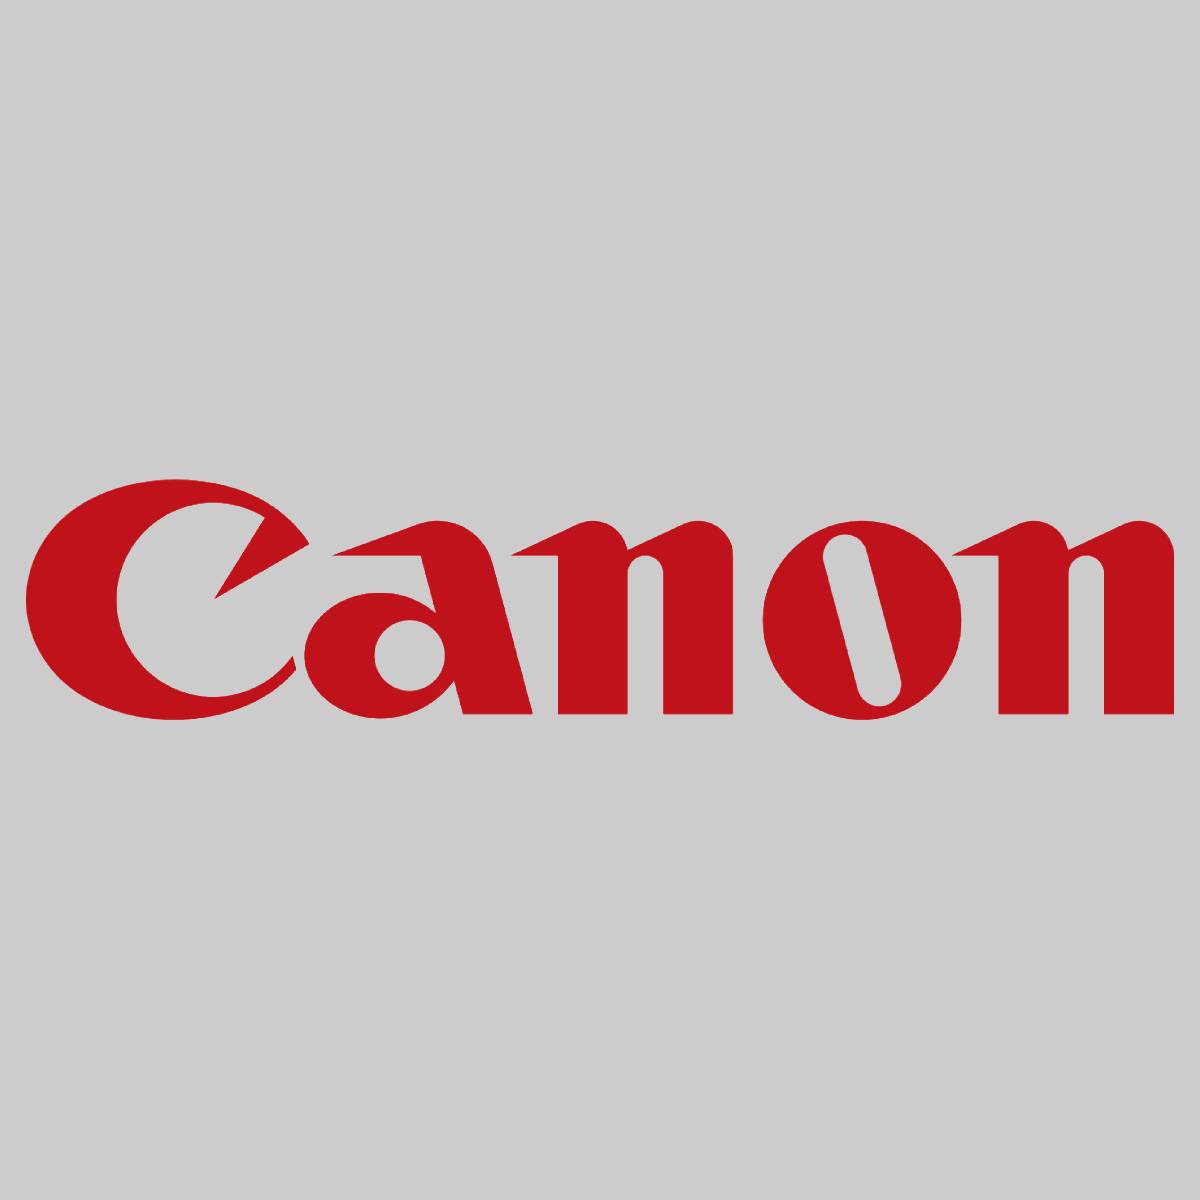 "Original Canon C-EXV 53 Toner Black 0473C002 für IR 4525i 4535i 4545i 4551i 455